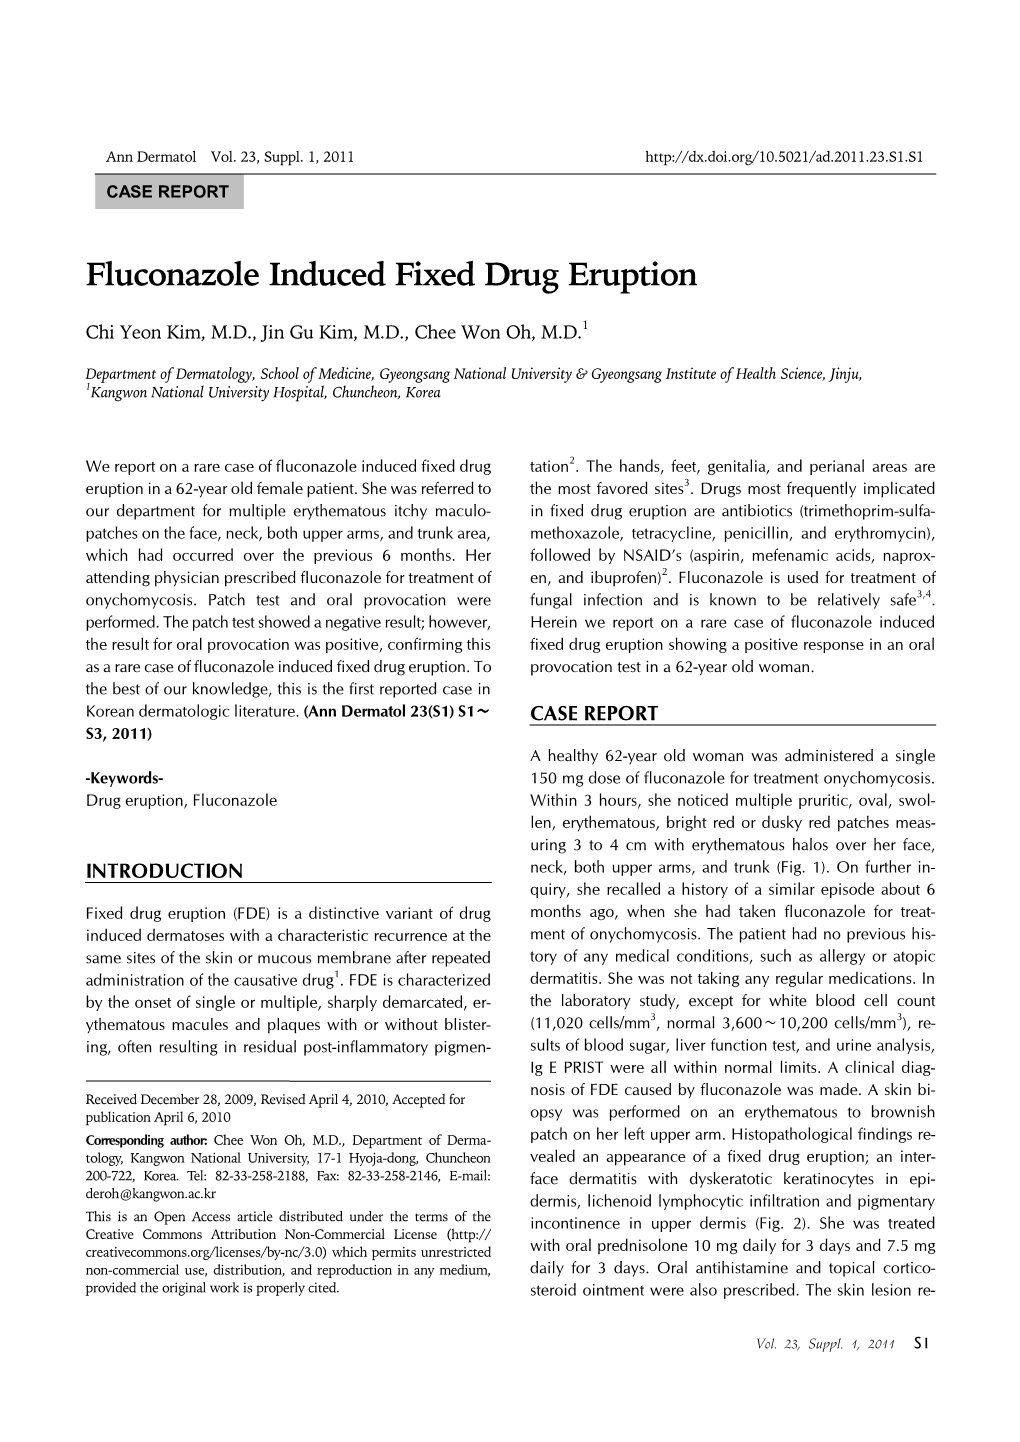 Fluconazole Induced Fixed Drug Eruption